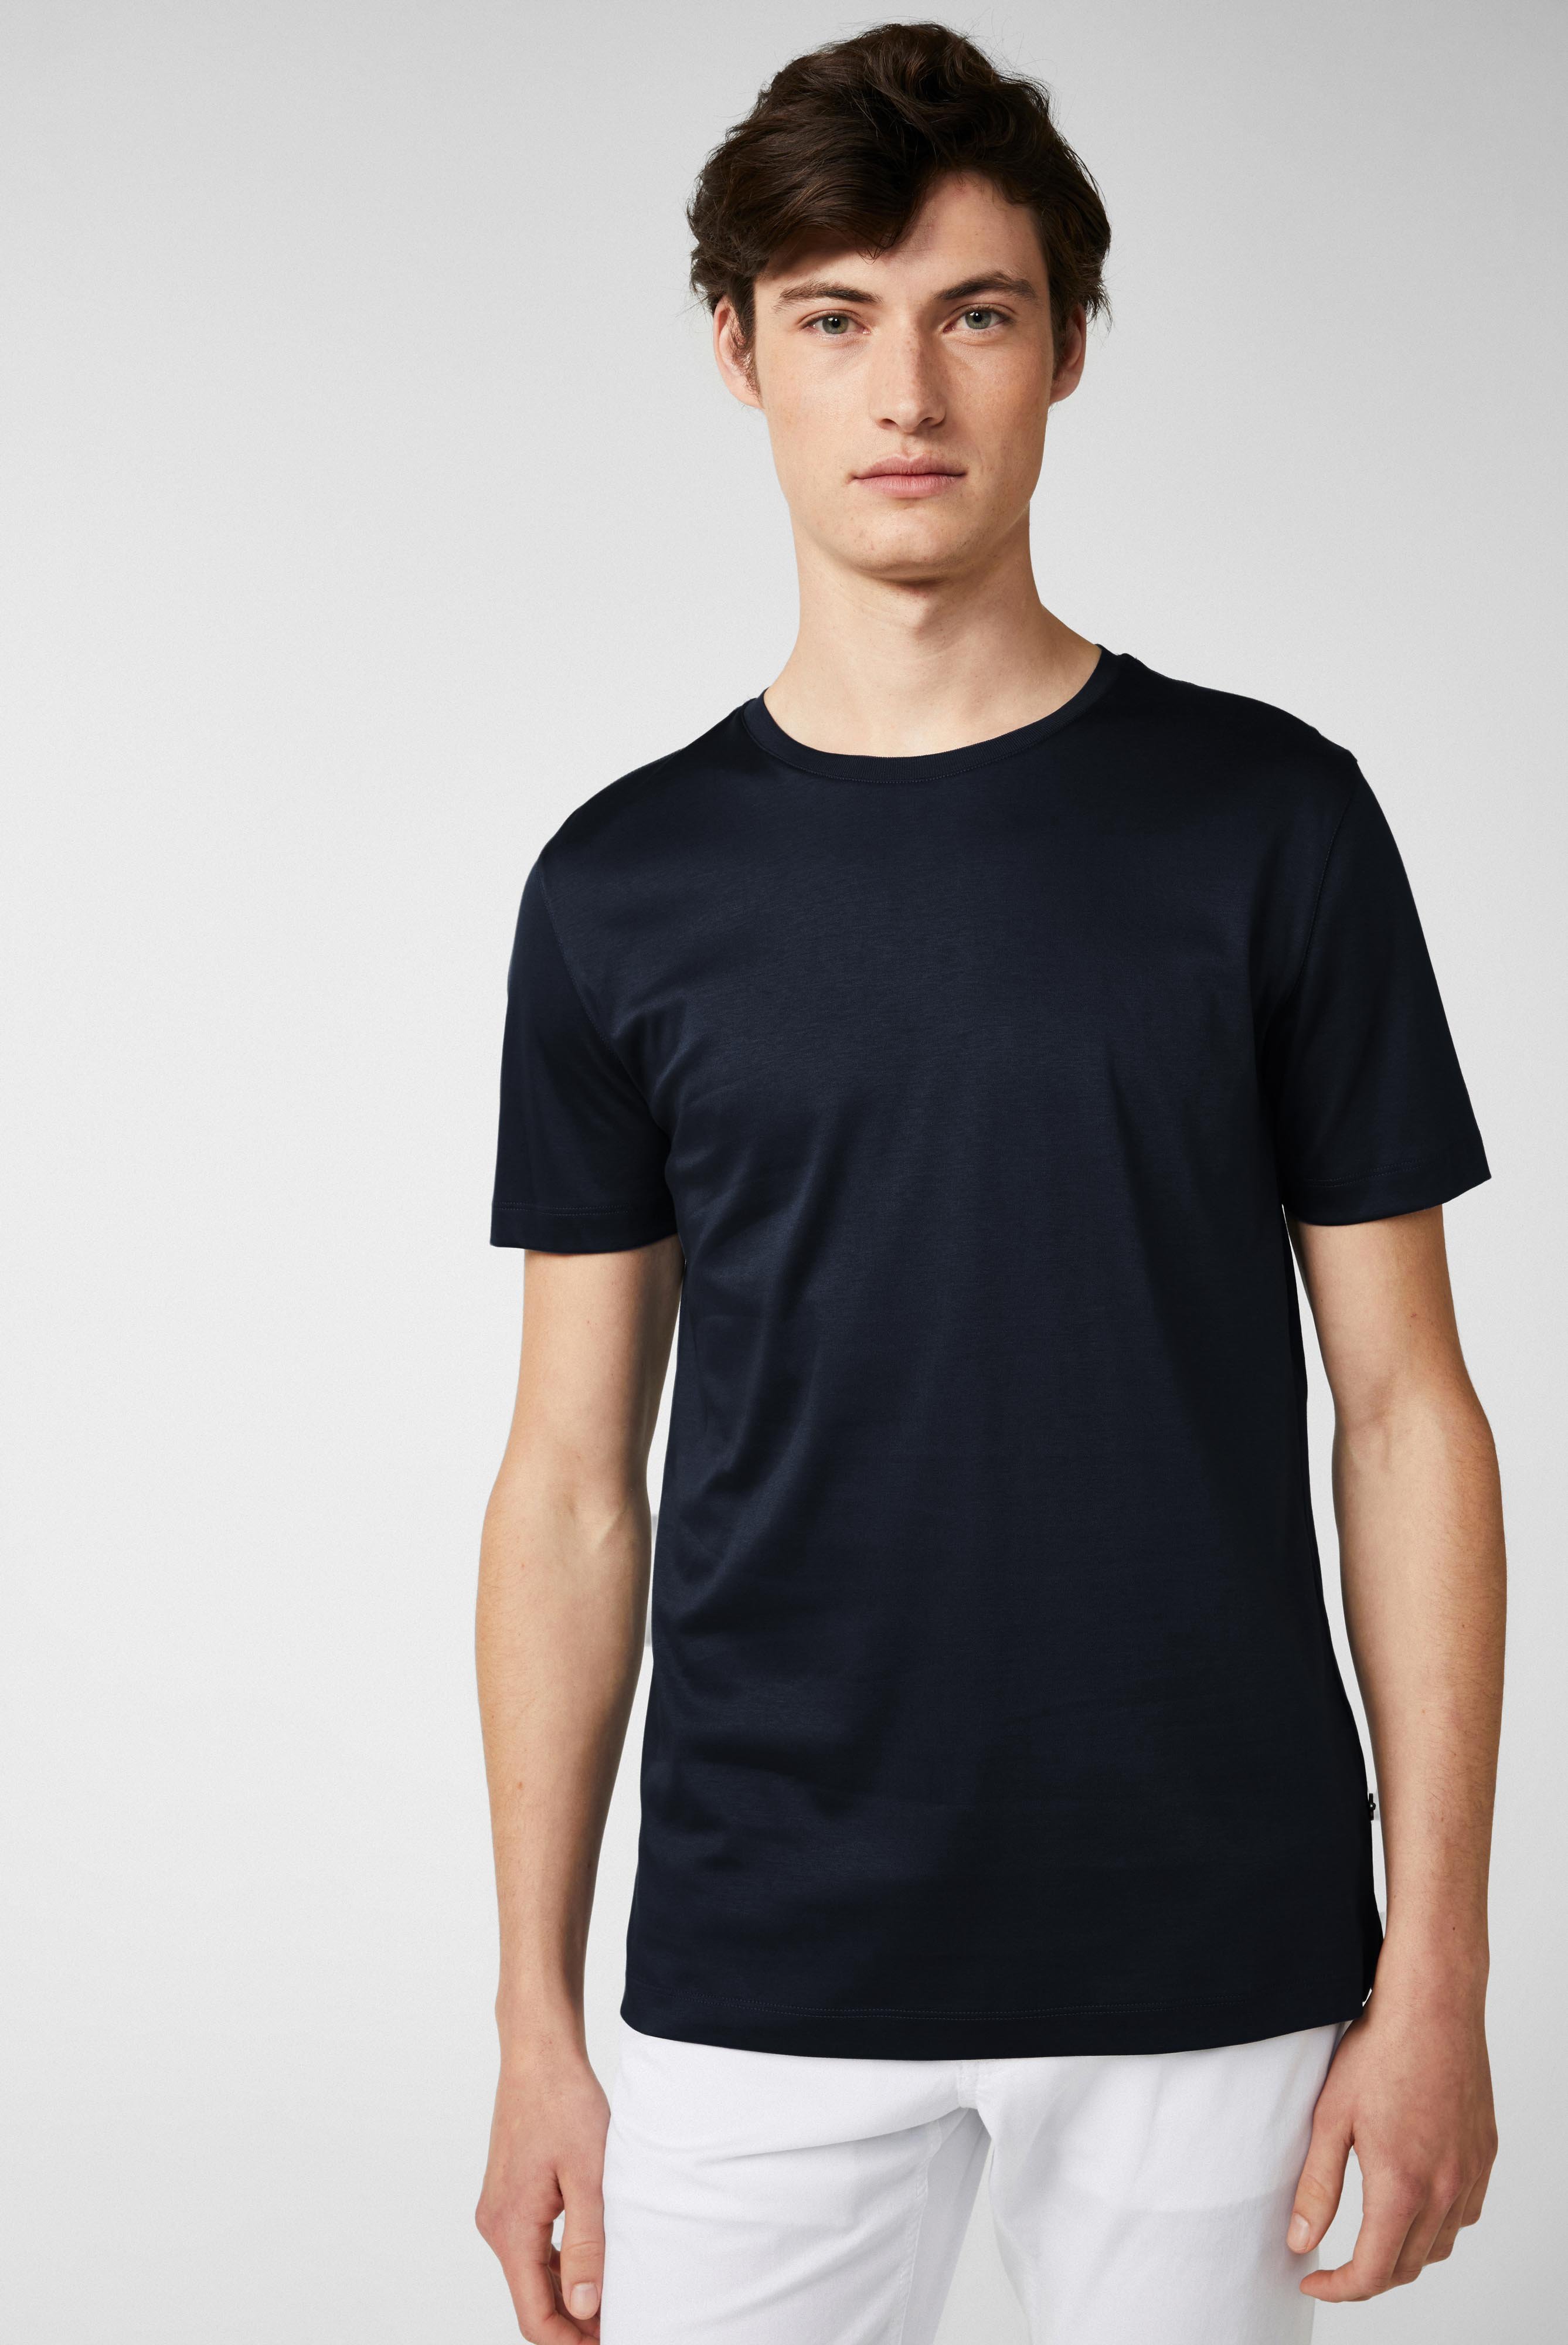 Rundhals Jersey T-Shirt Slim Fit